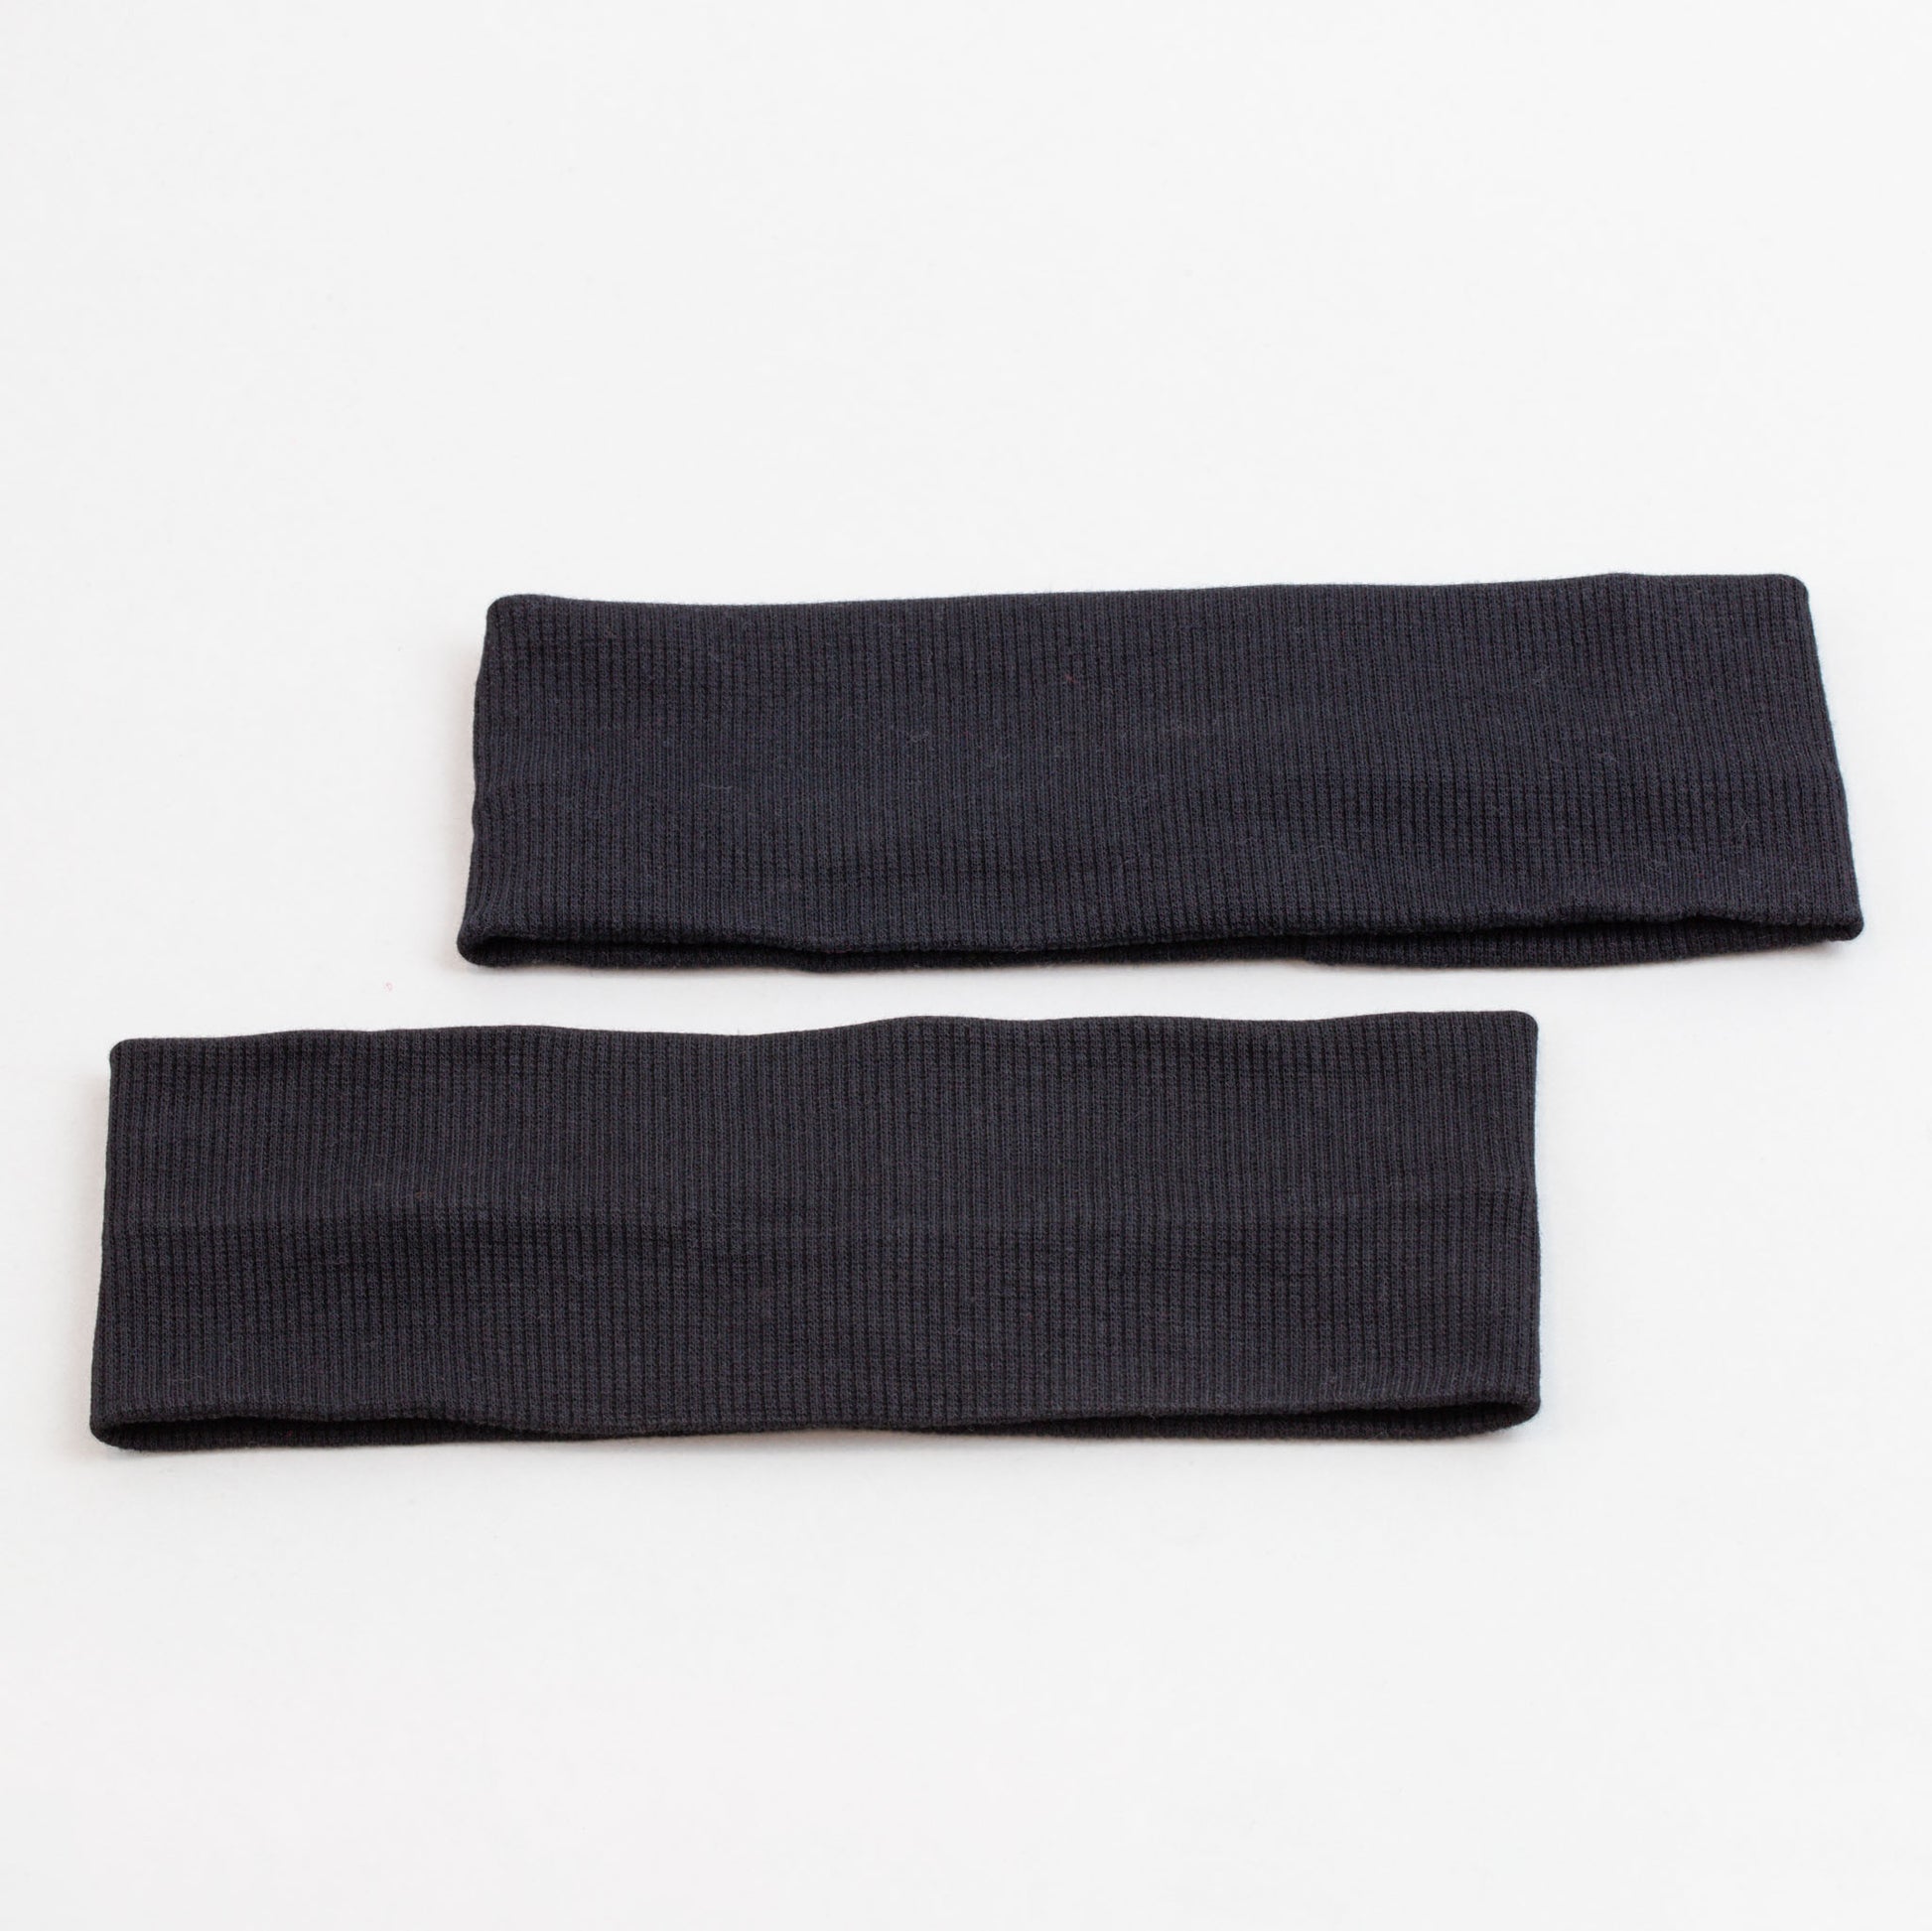 Bentițe de păr simple cu striații din bumbac, set 2 buc - Negru